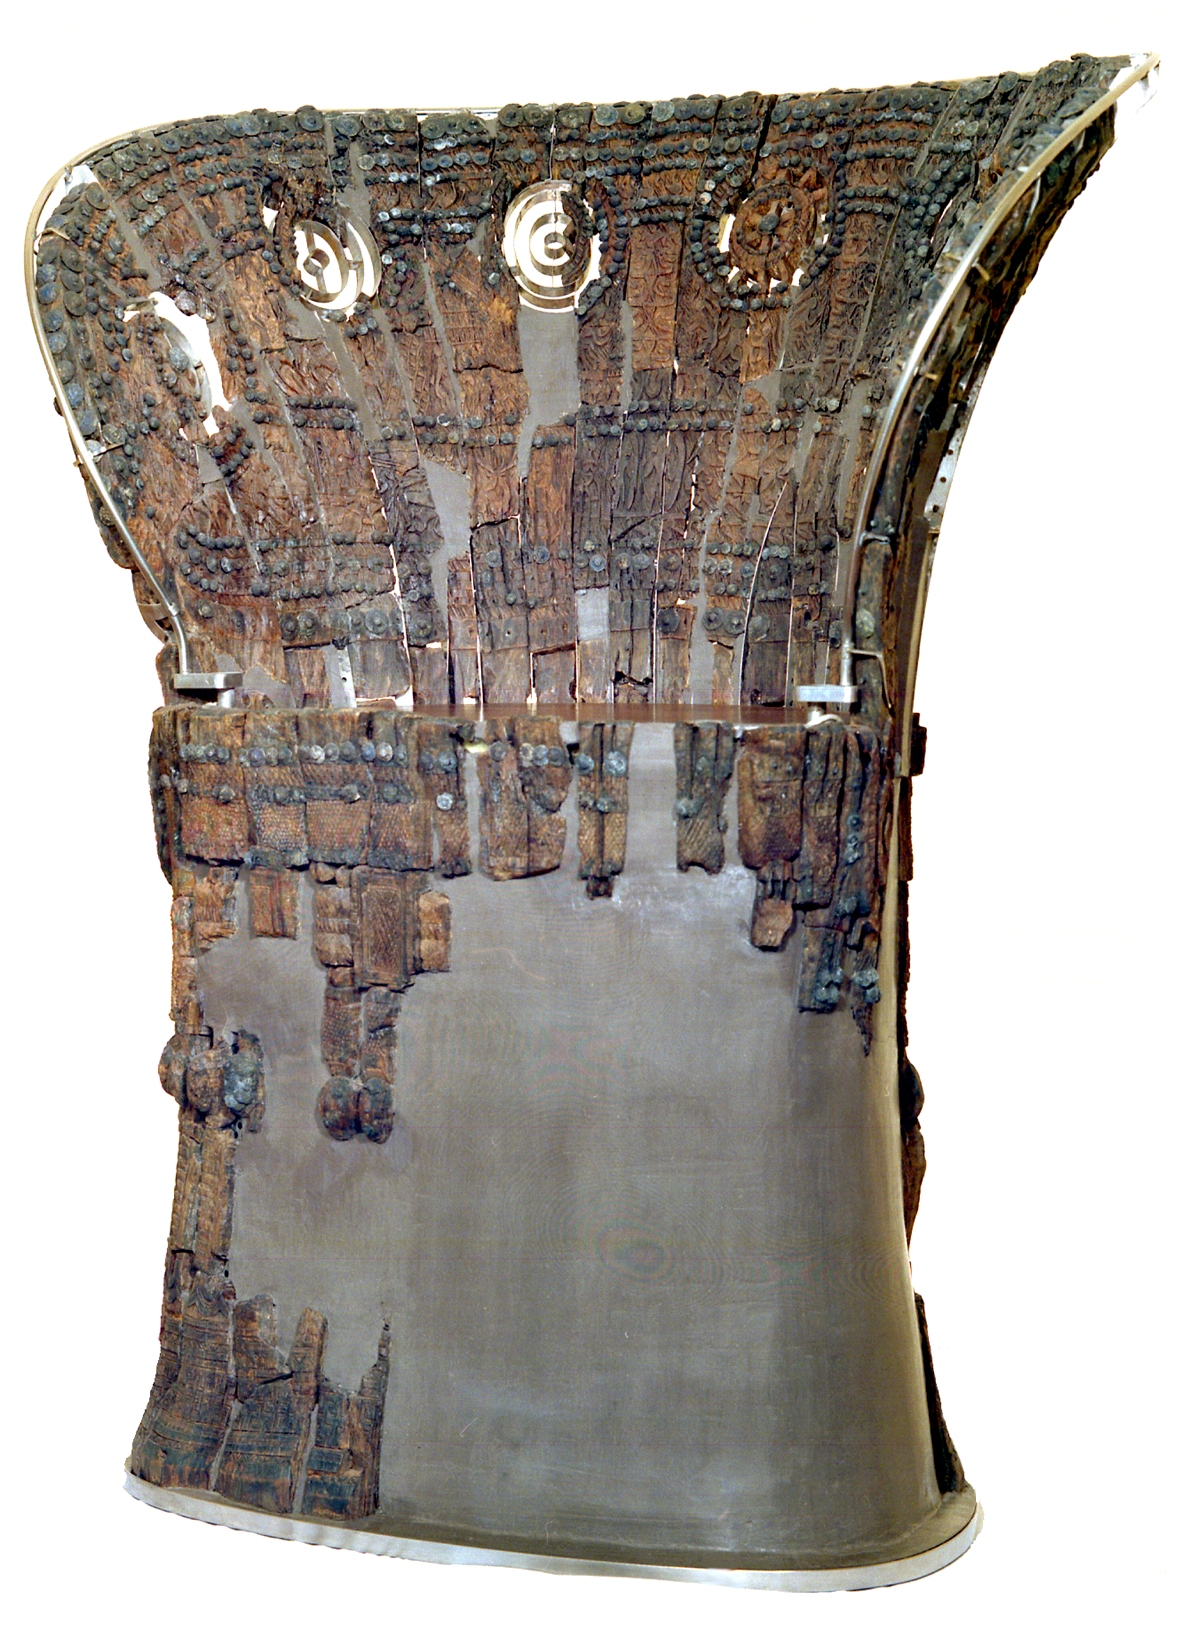 Il trono esposto nel Museo Civico Archeologico di Verucchio (sar in mostra una riproduzione)